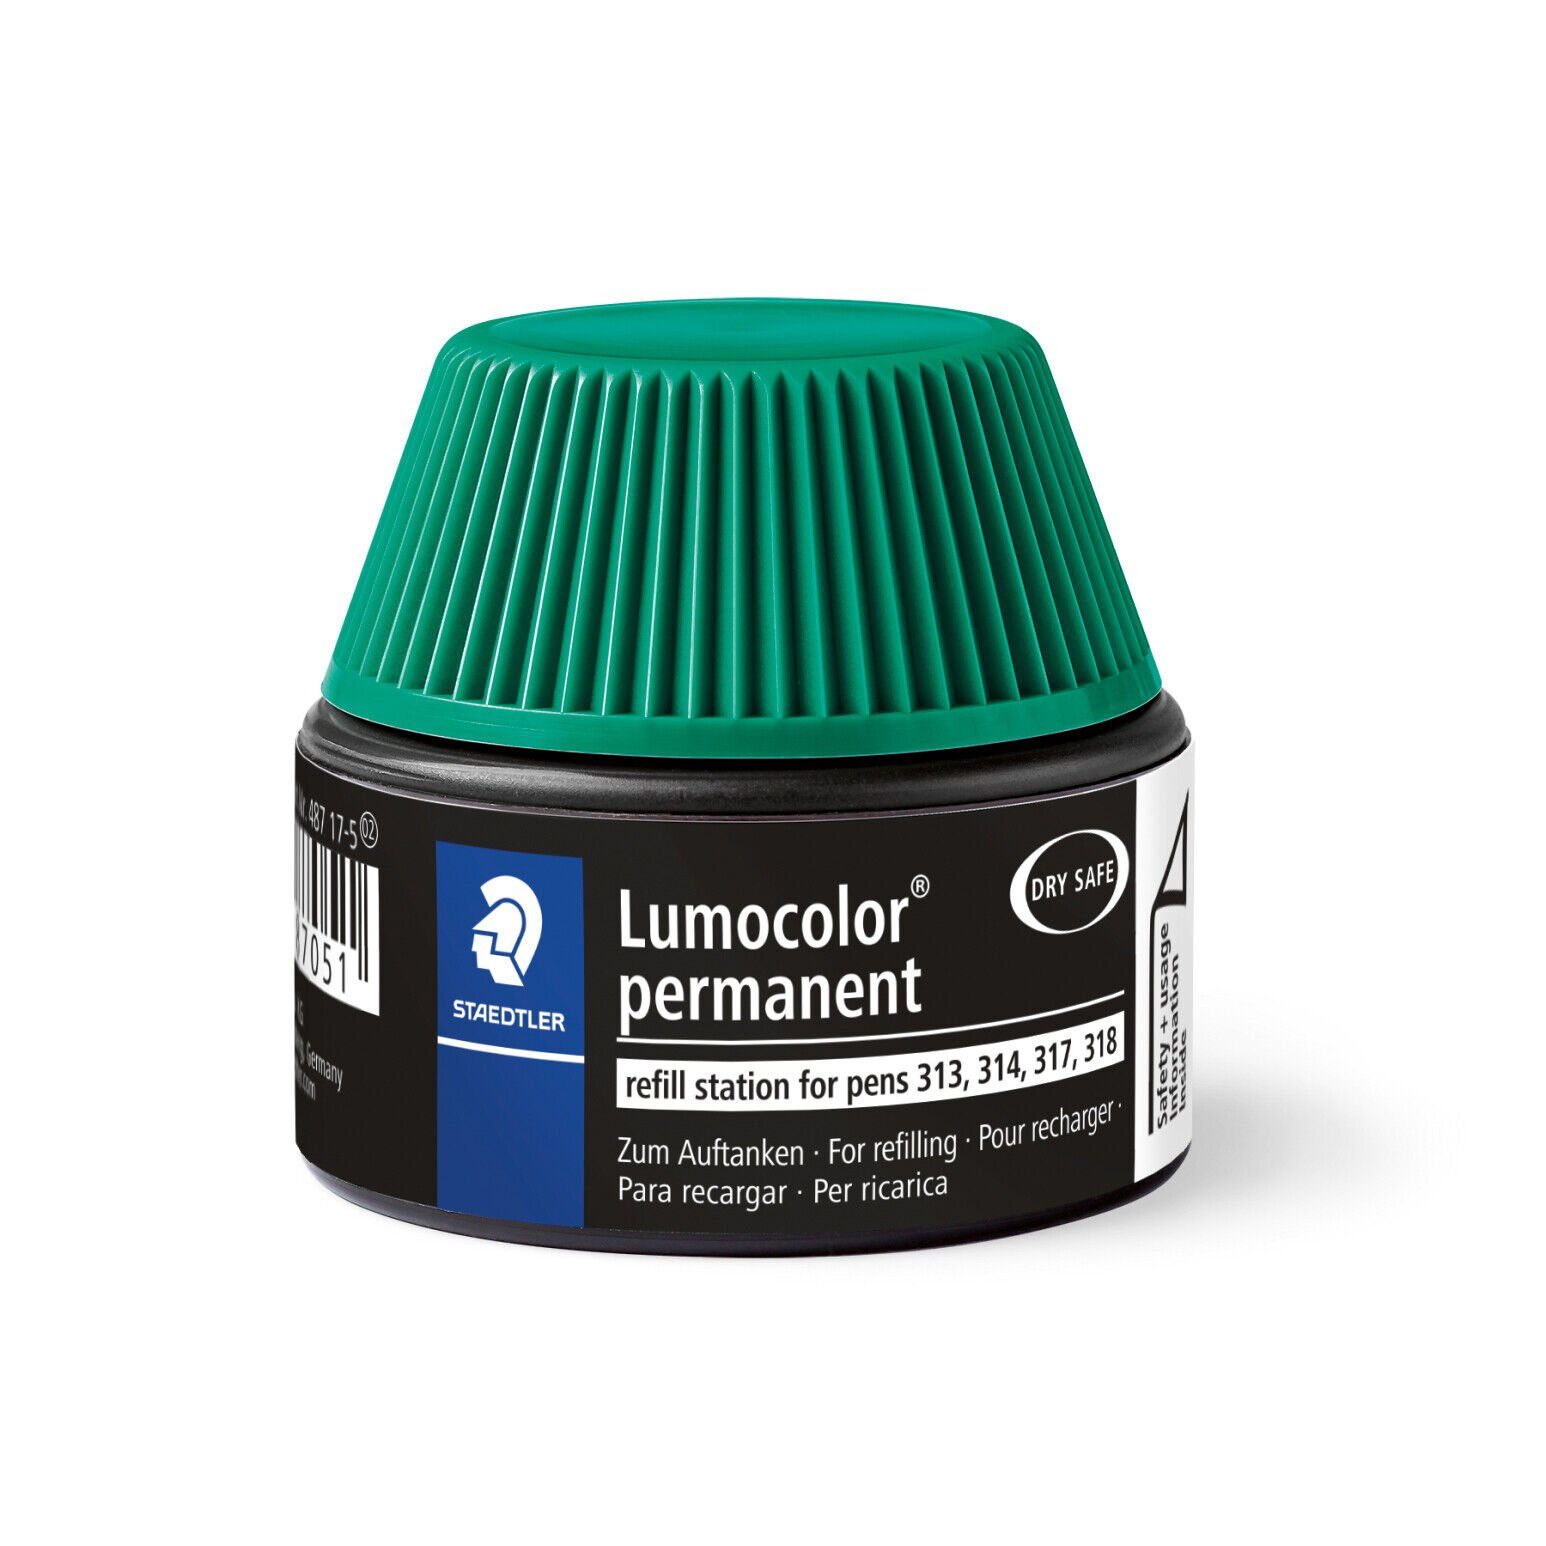 Lumocolor® STAEDTLER Marker Nachfülltinte Refill lichtbeständig permanent wasserfest, 487 grün, 17-5 STAEDTLER